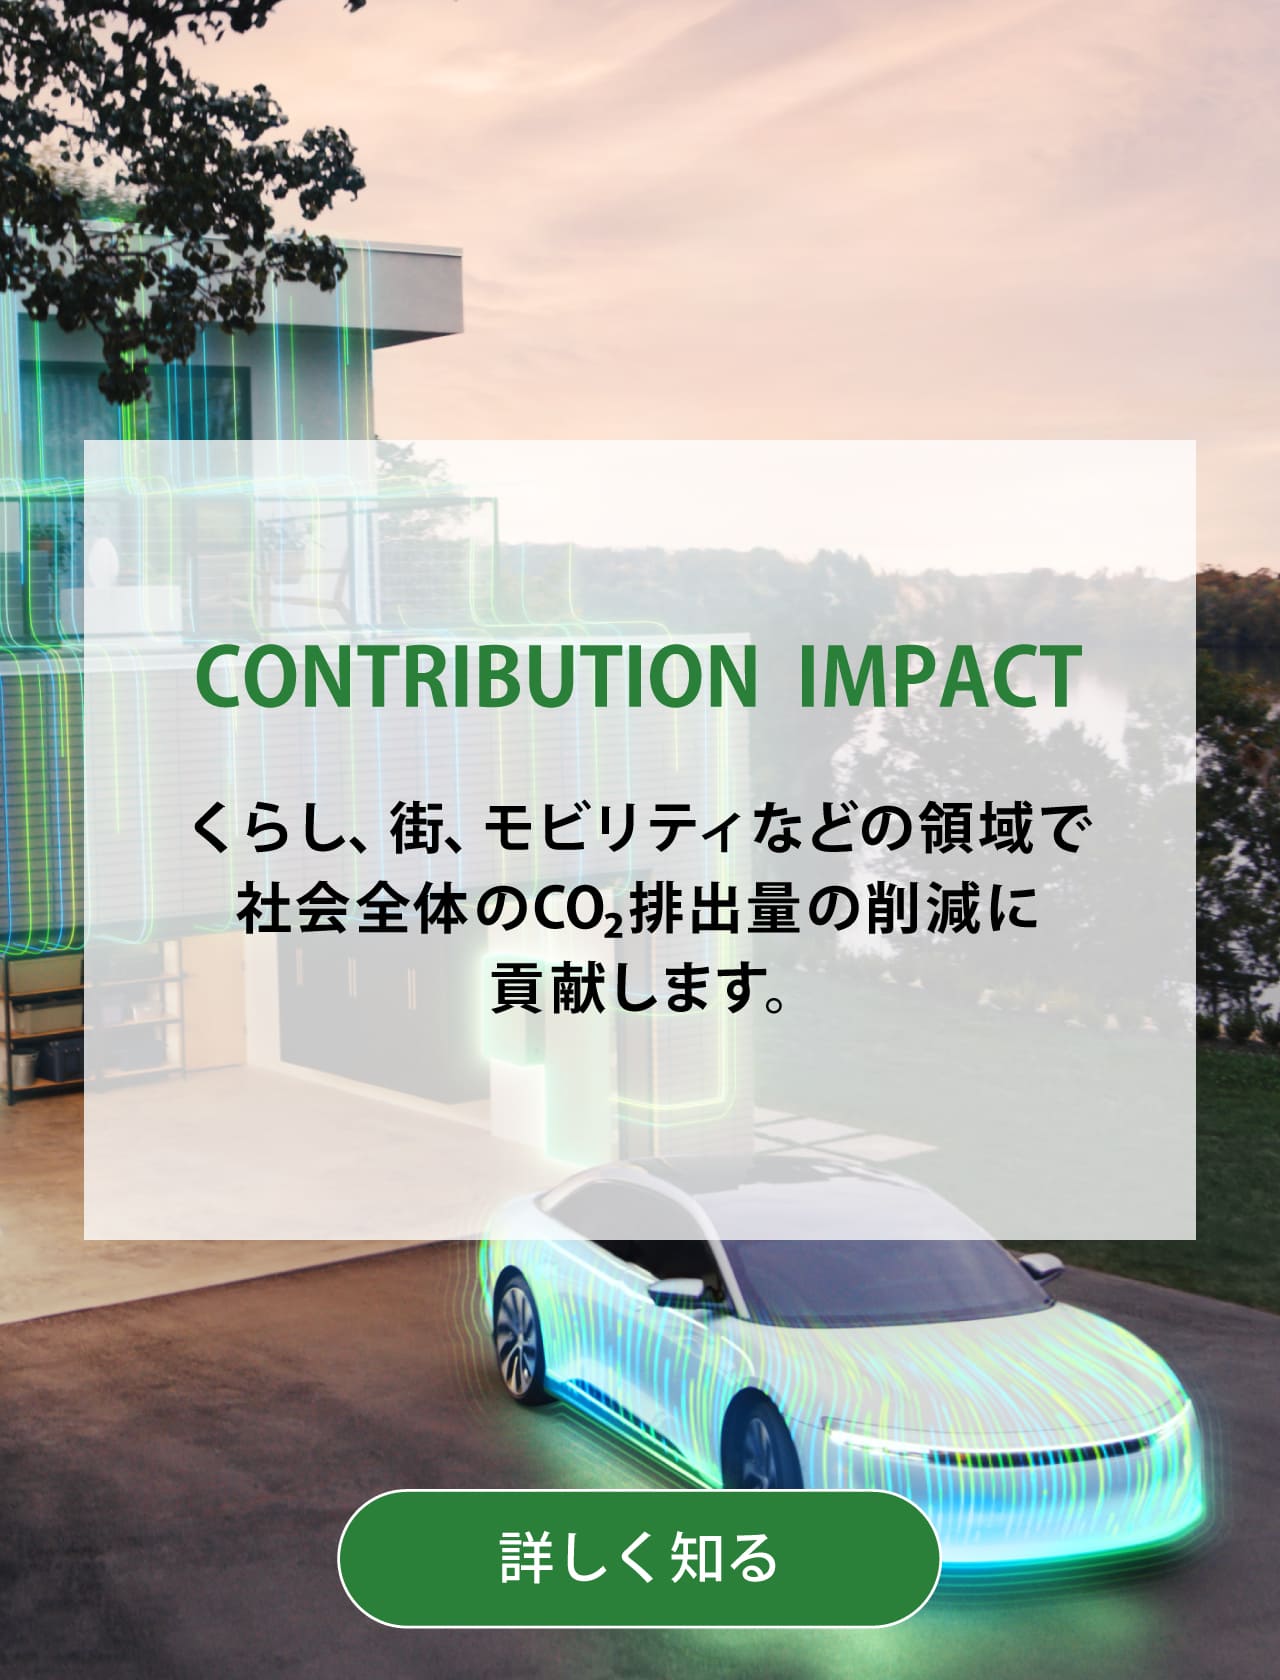 CONTRIBUTION  IMPACT くらし、街、モビリティなどの領域で社会全体のCO₂排出量の削減に貢献します。詳しく知る